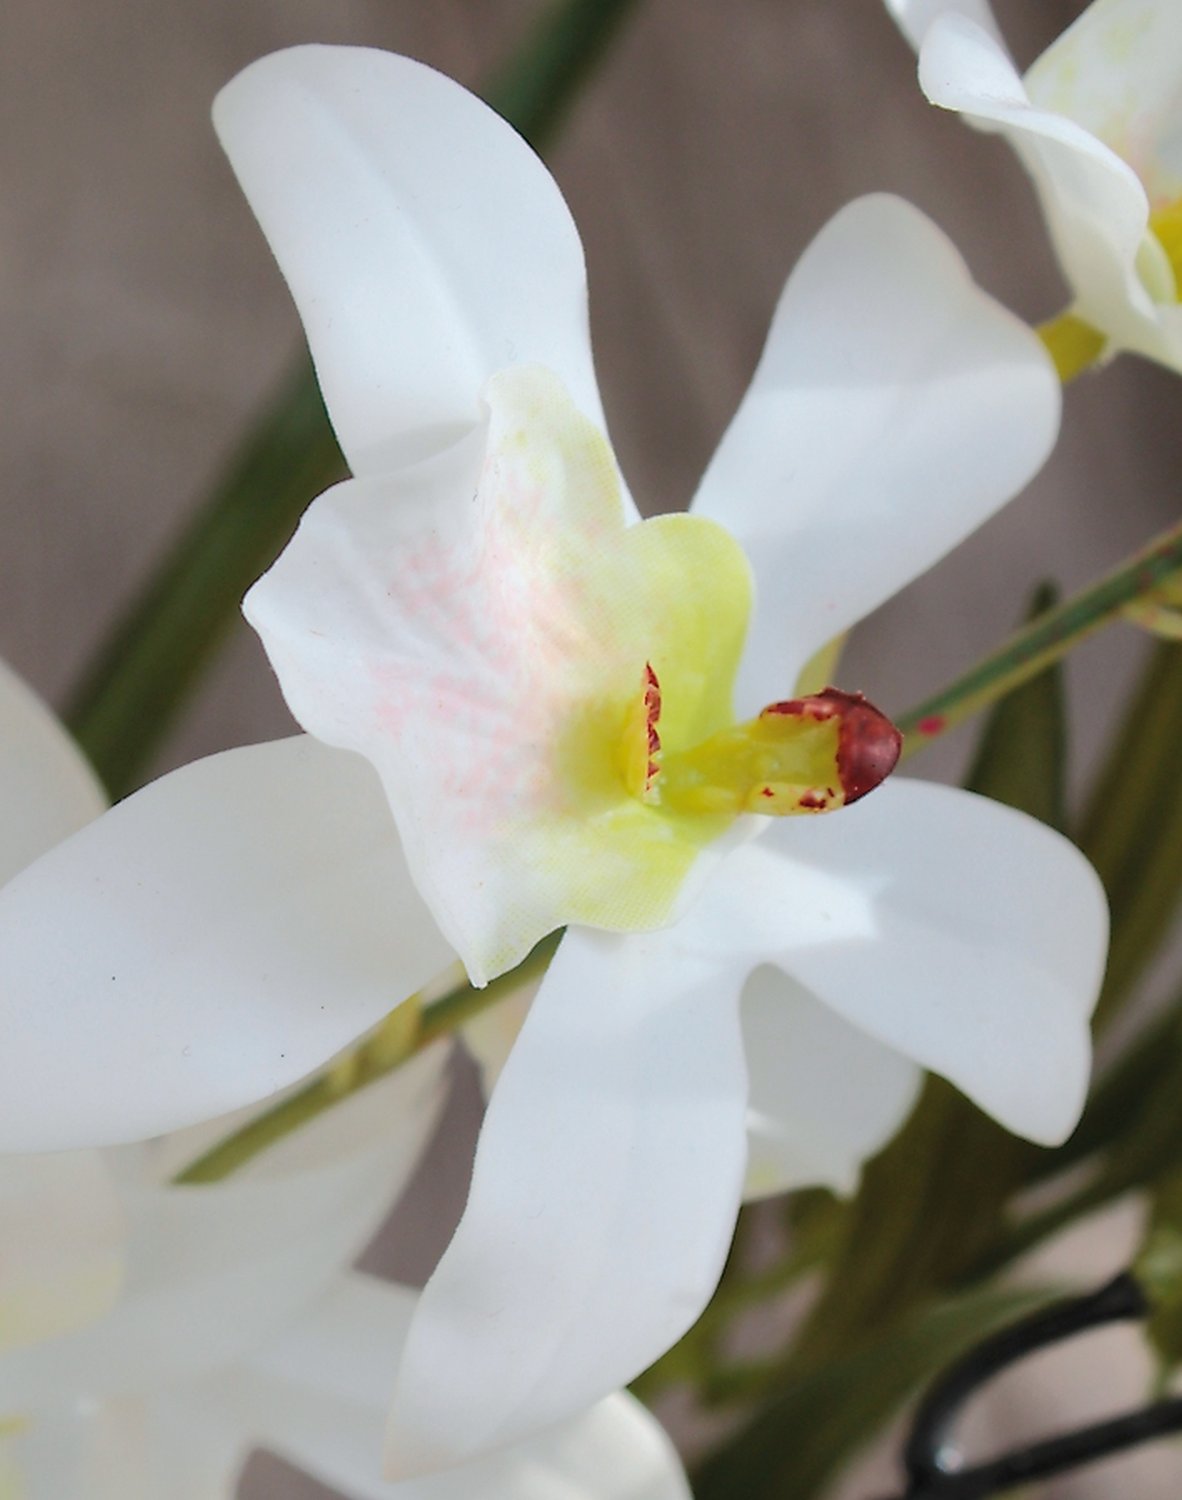 Künstliche Orchidee Dendrobium & Bambus in 'Erde', 57 cm, Real Touch Soft, weiß-grün